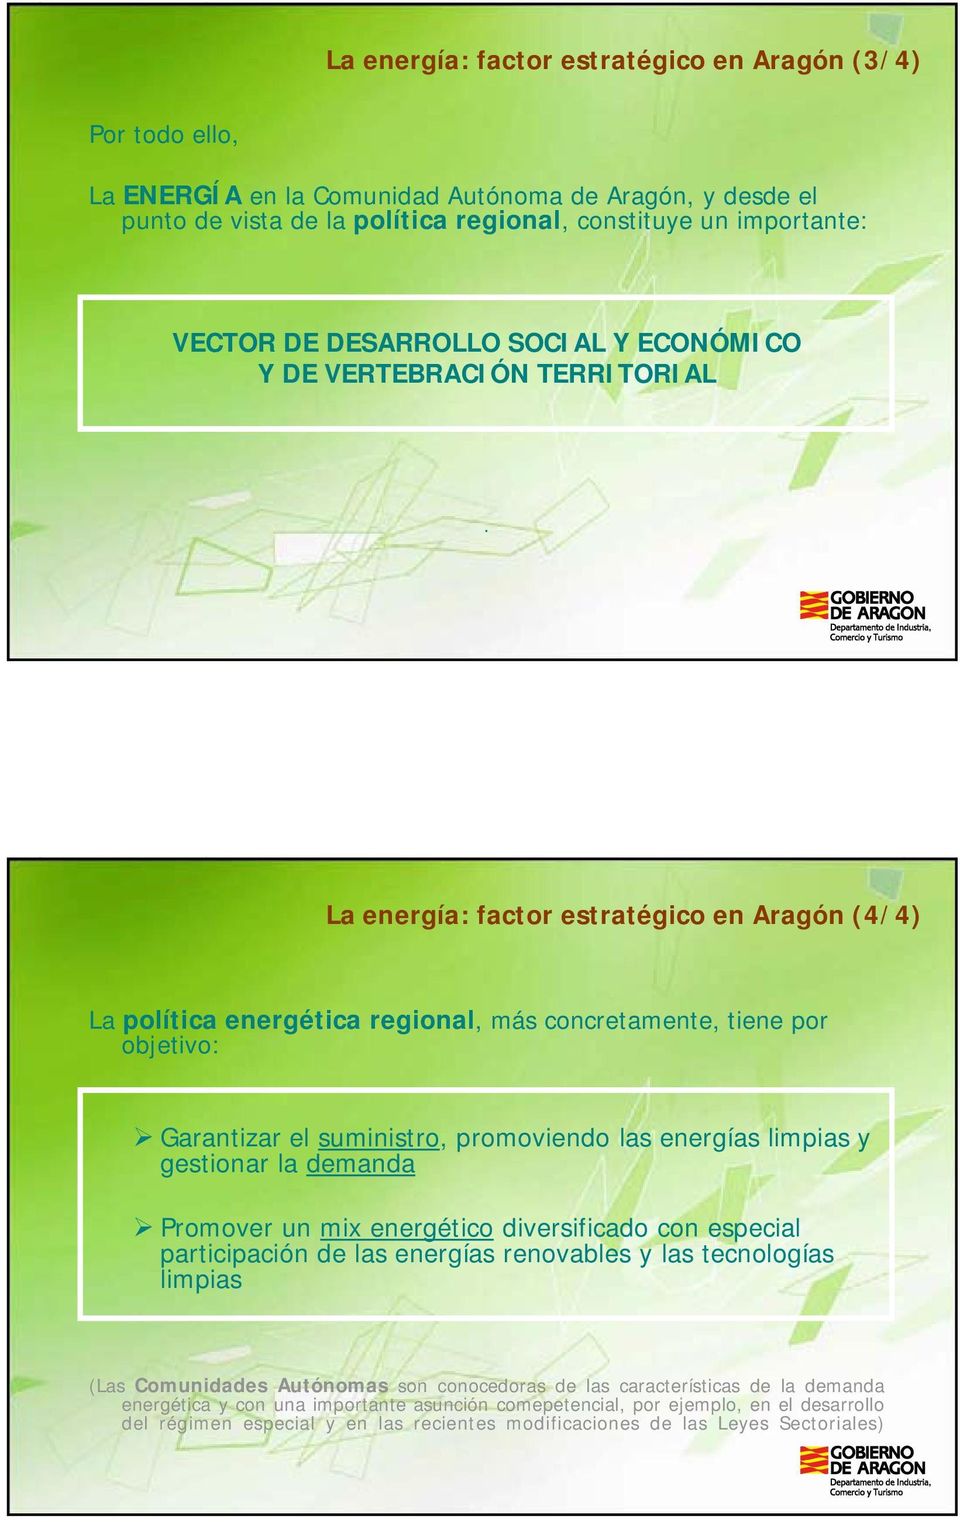 La energía: factor estratégico en Aragón (4/4) La política energética regional, más concretamente, tiene por objetivo: Garantizar el suministro, promoviendo las energías limpias y gestionar la